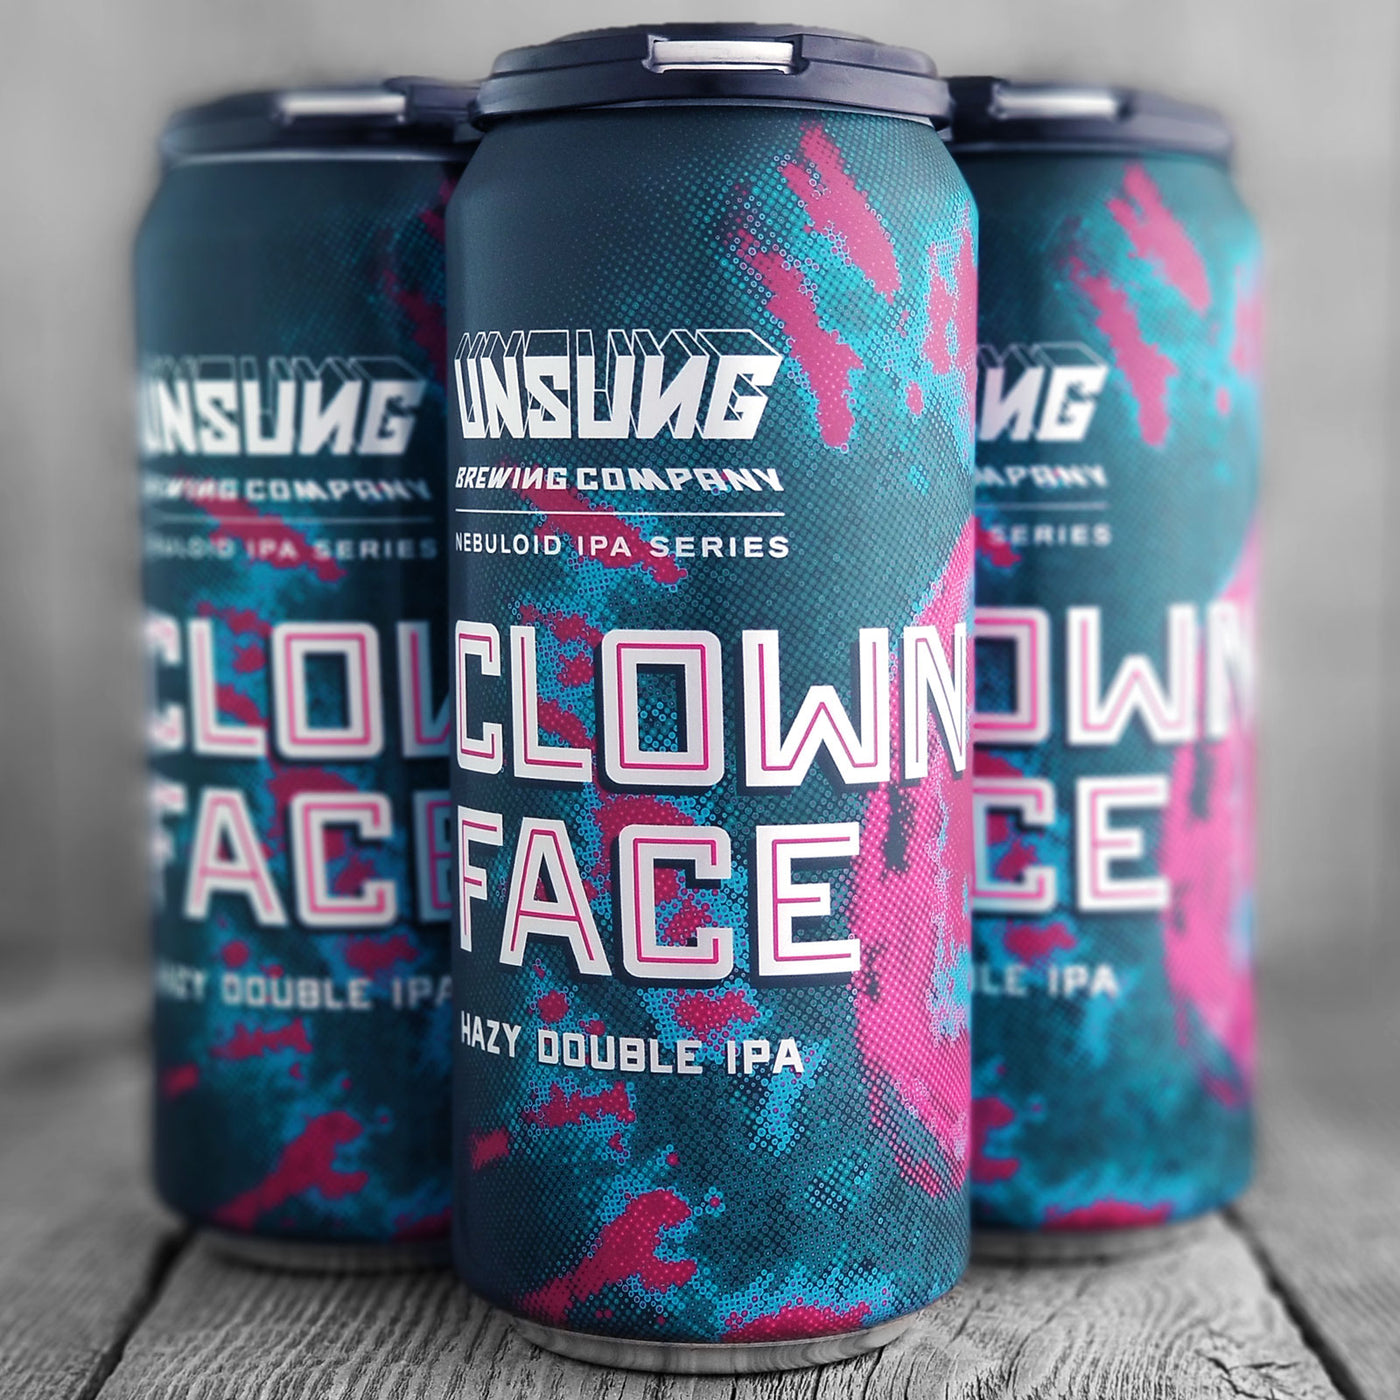 Unsung Clownface - Nebuloid IPA Series